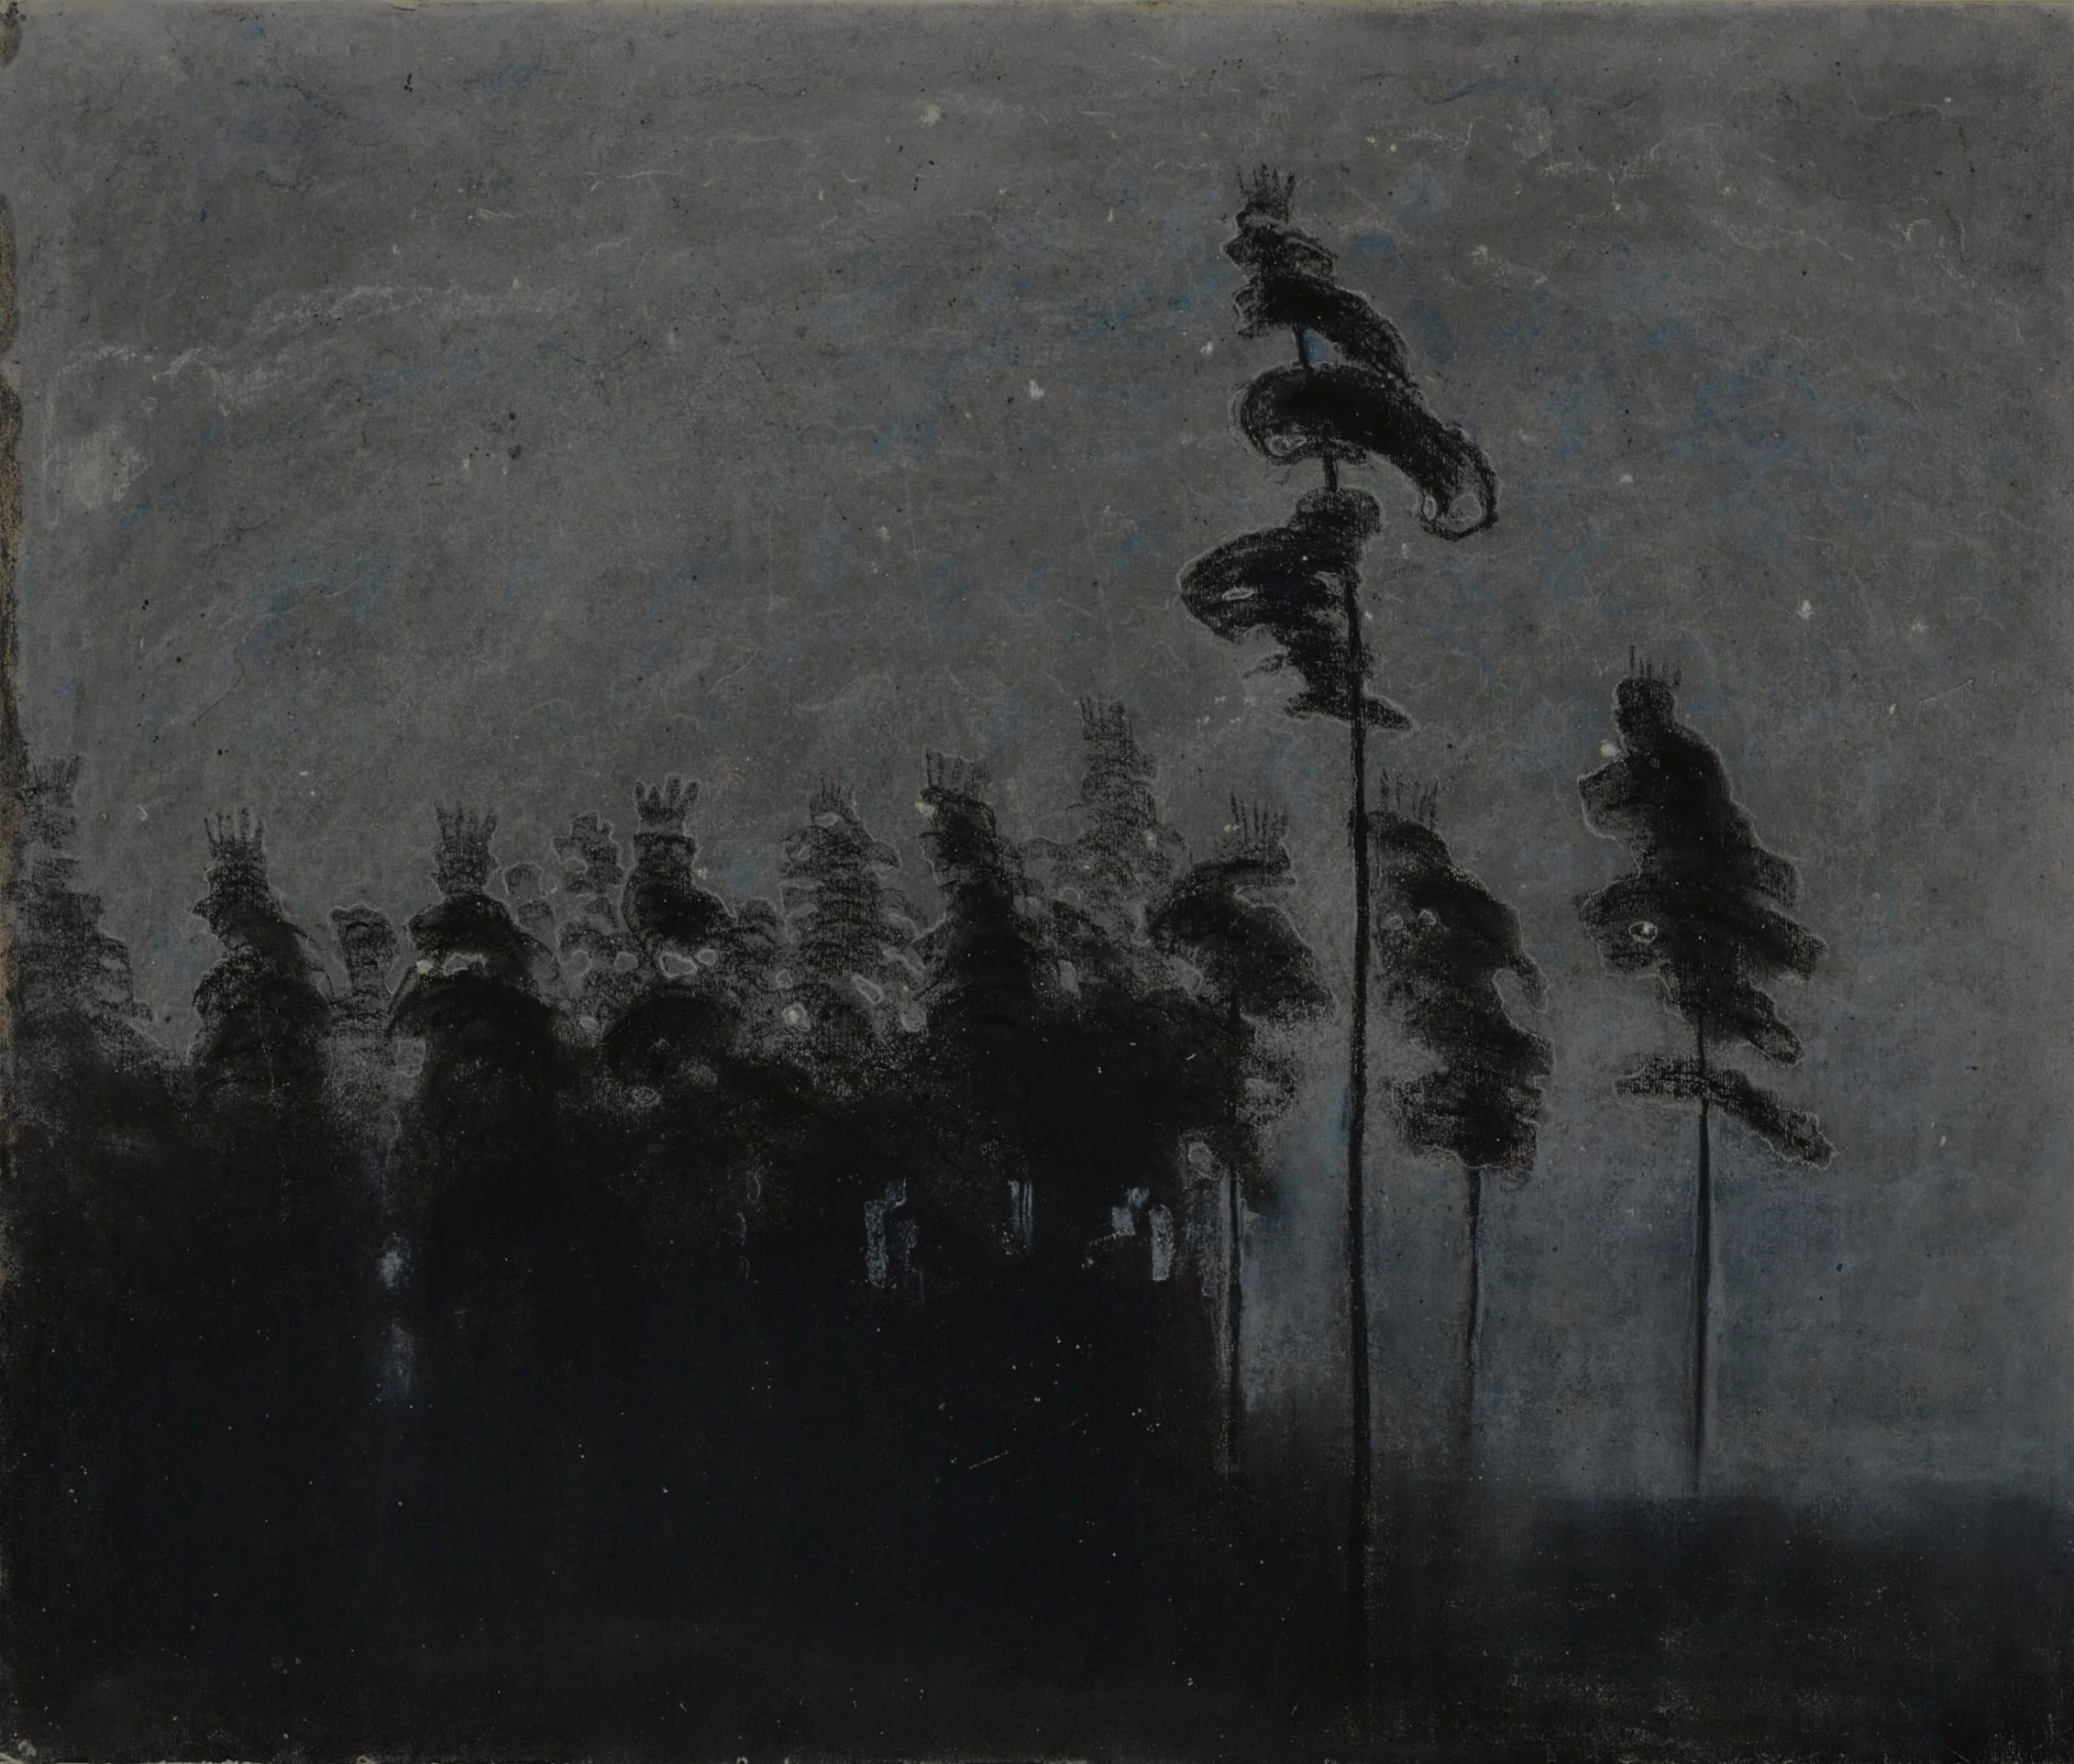 Forest, Mikalojus Konstantinas Čiurlionis